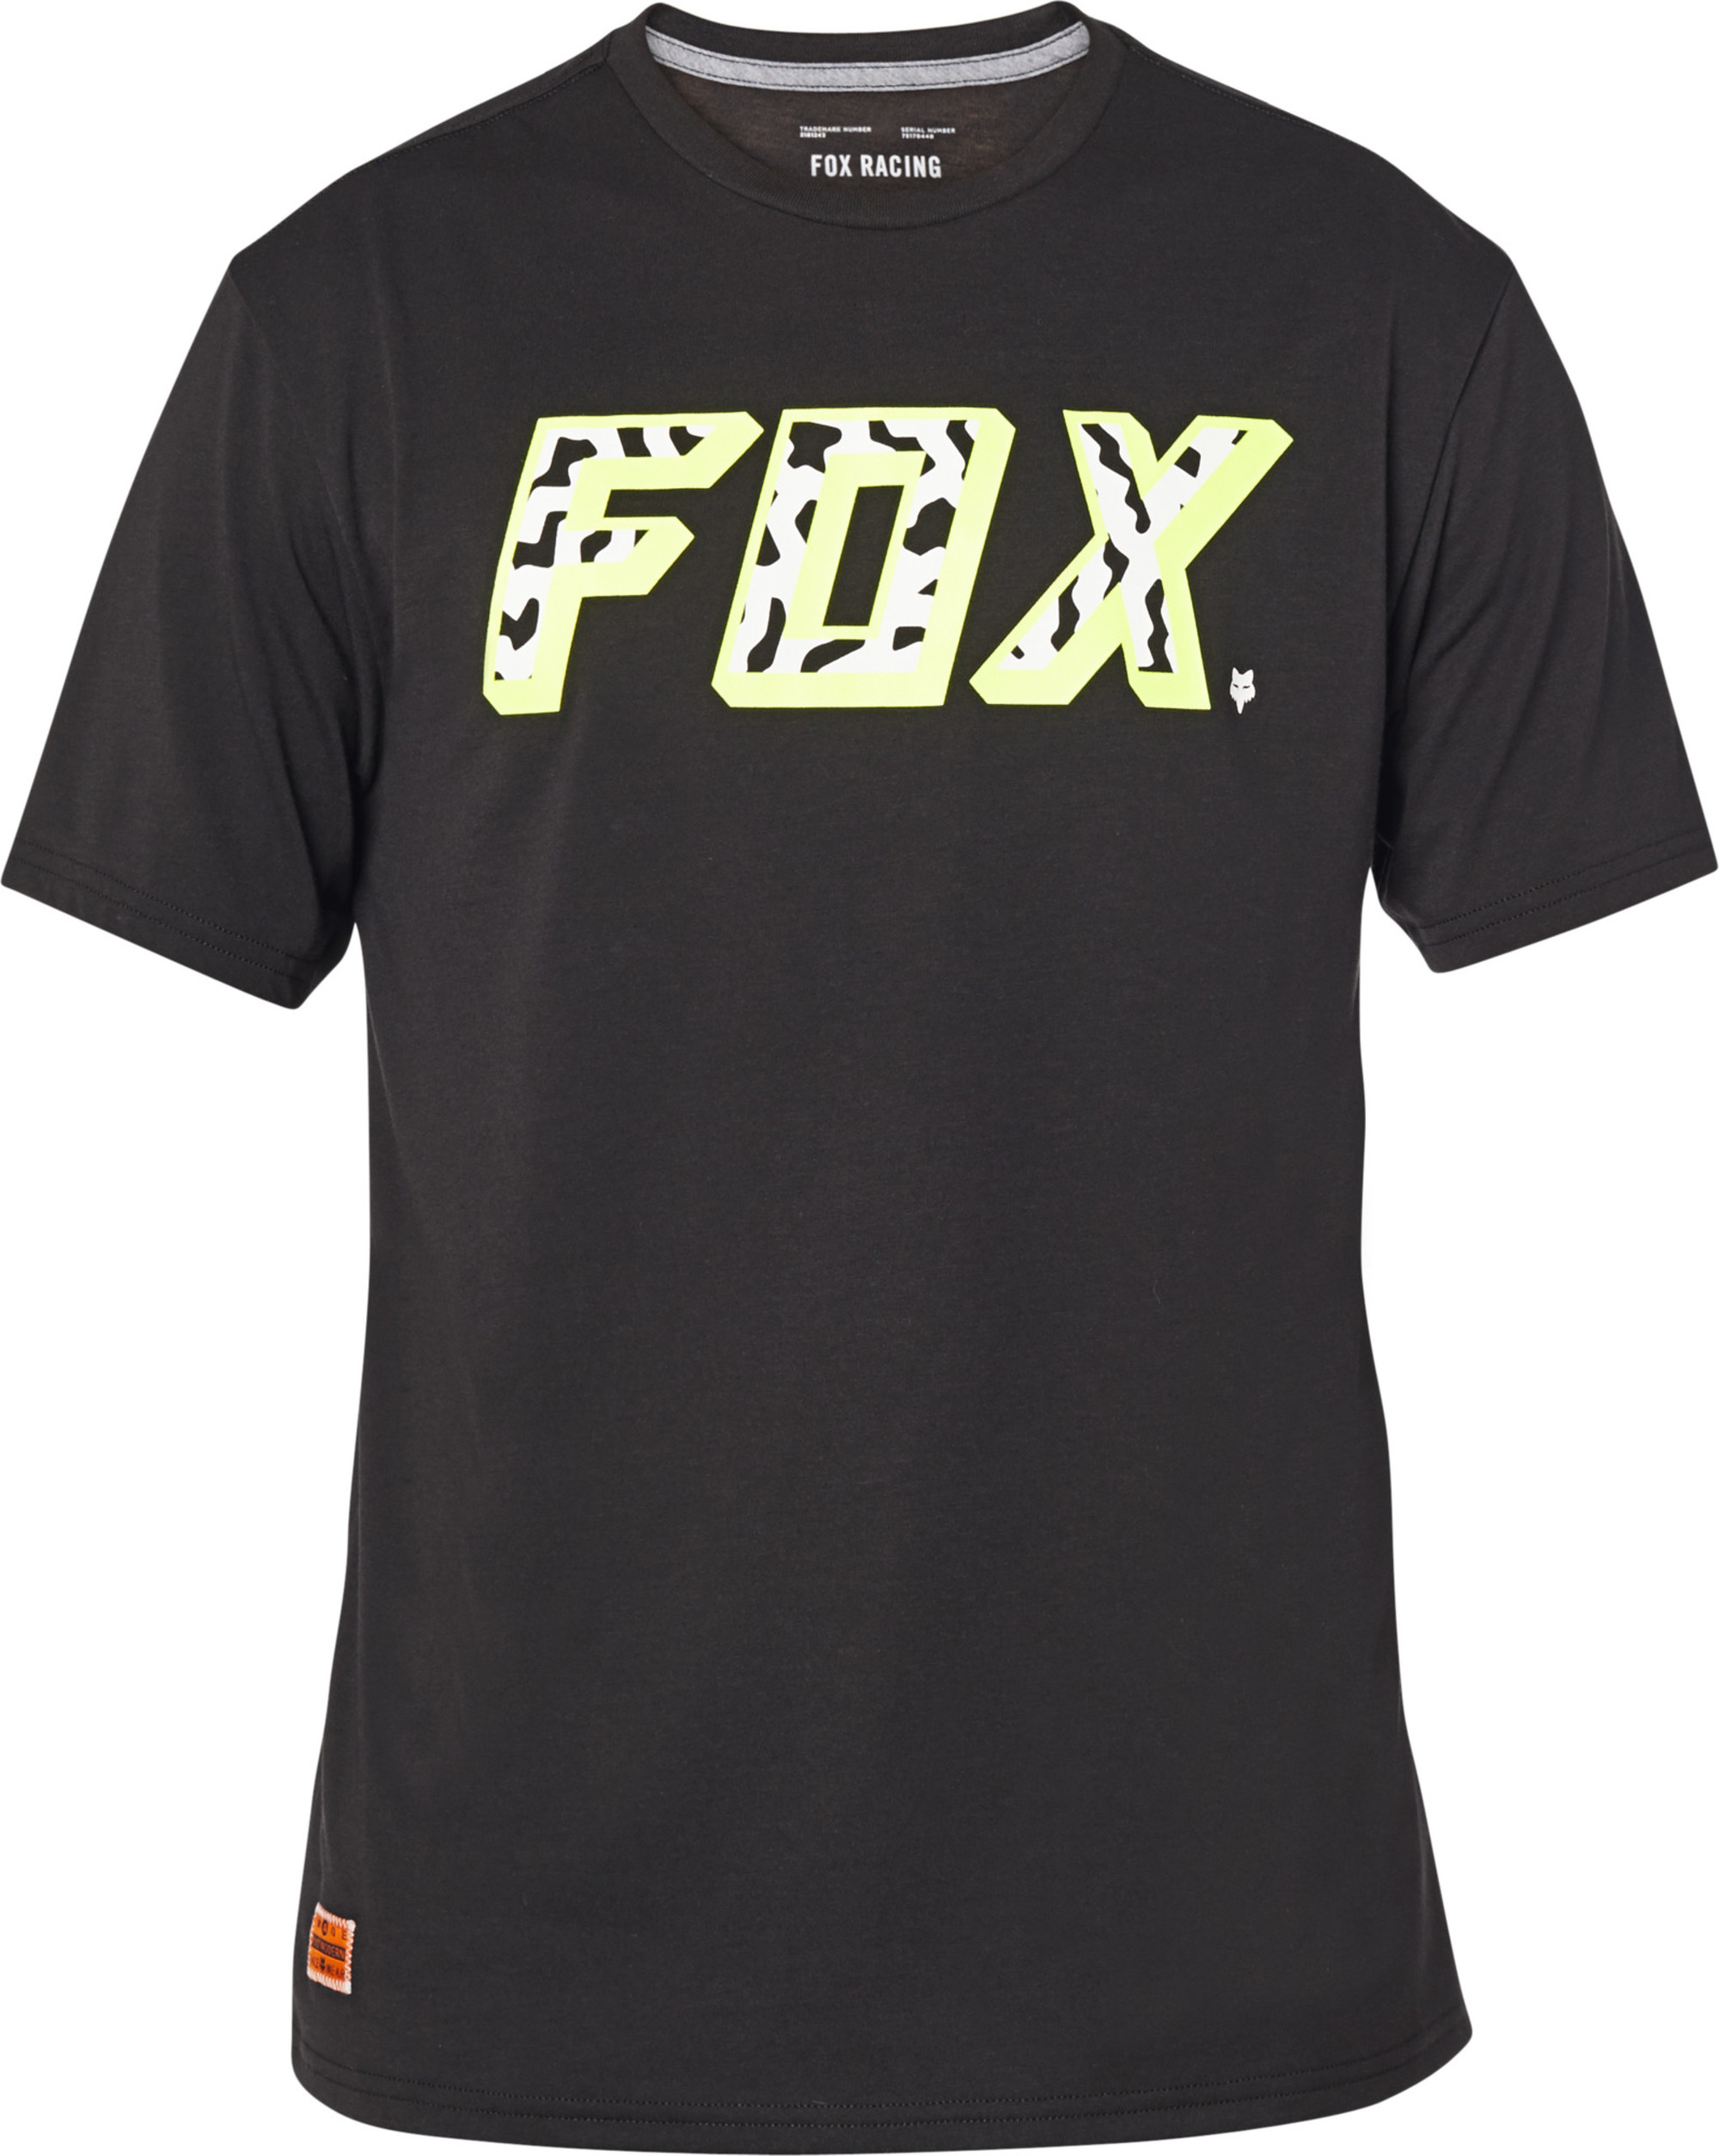 fox racing t-shirt shirts for men psycosis tech